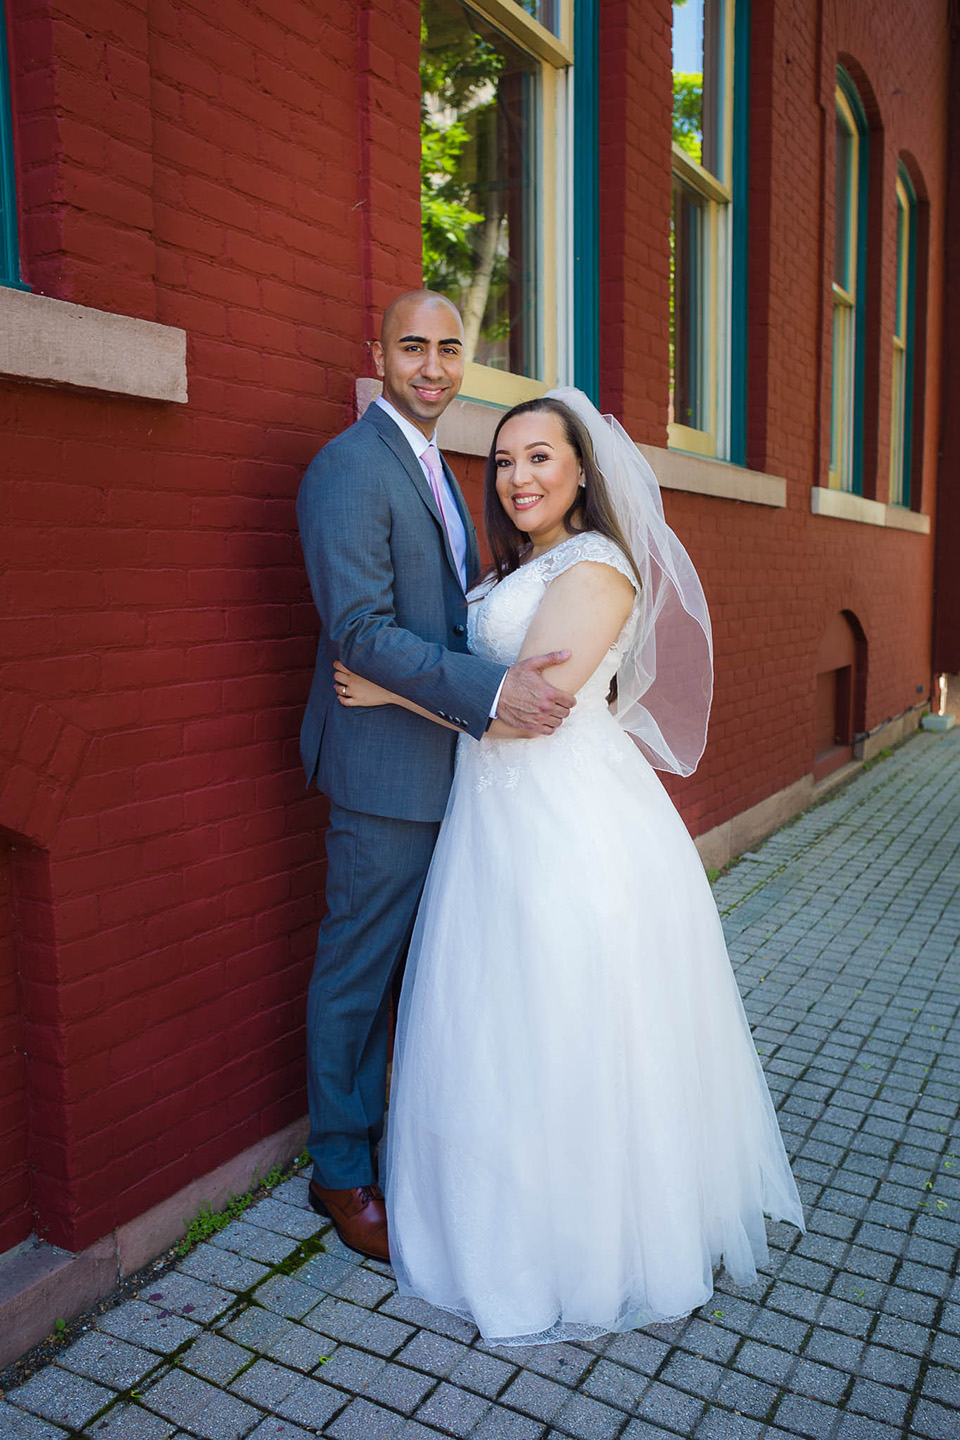 cincinnati wedding photographer specializing in elopements